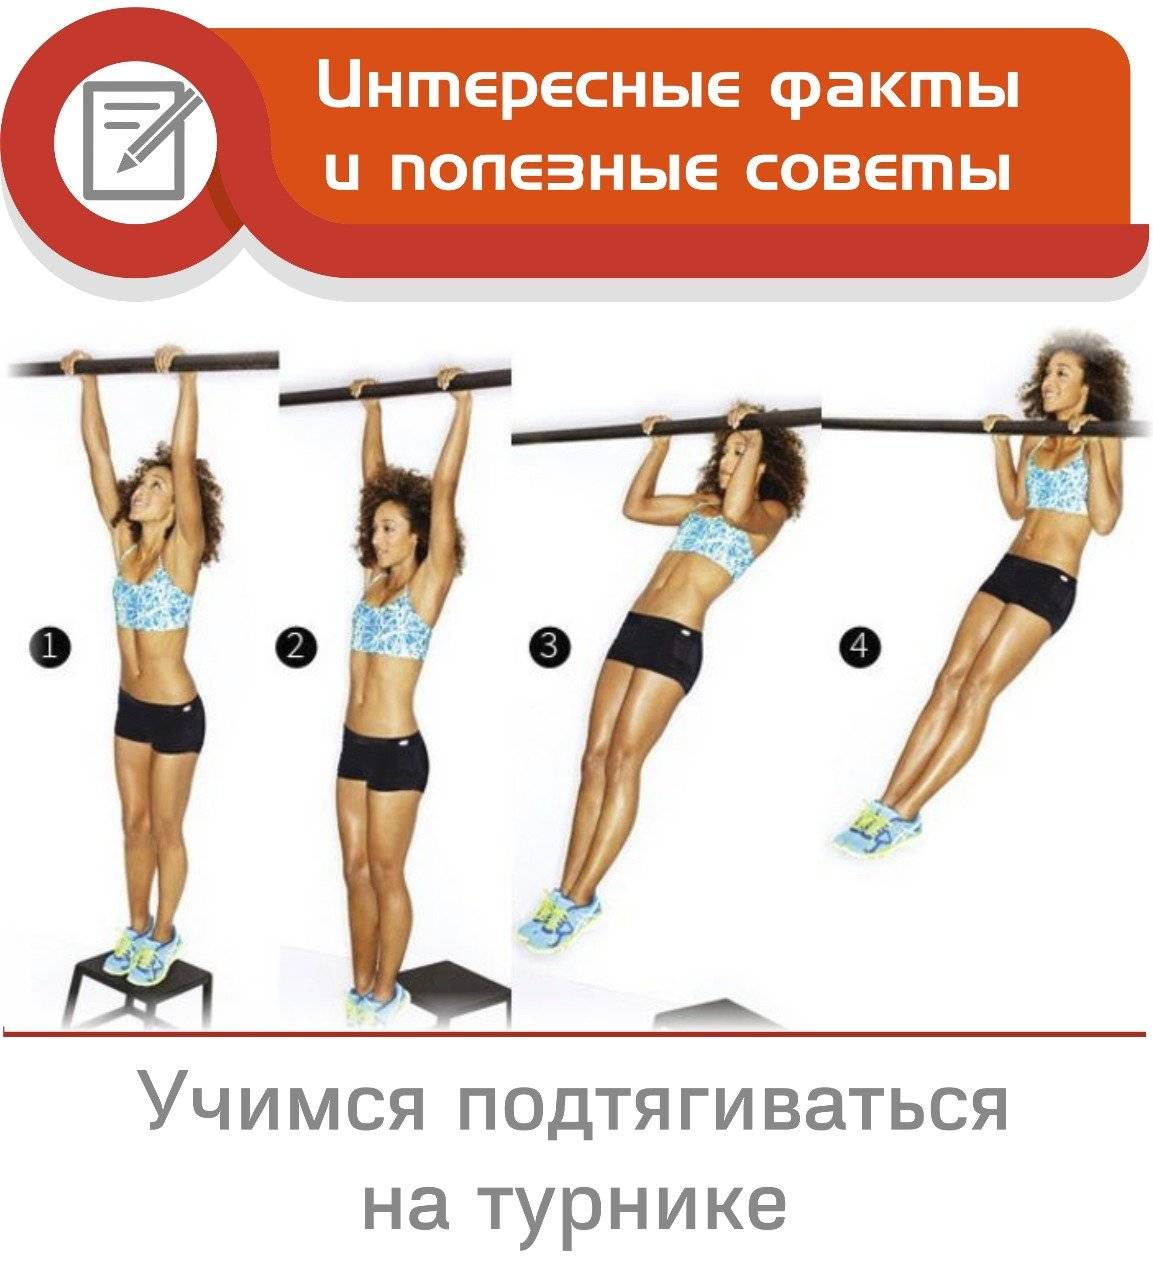 Как научиться подтягиваться на турнике за 1 или 2 недели (5-10 дней) - программа тренировок на sportobzor.ru